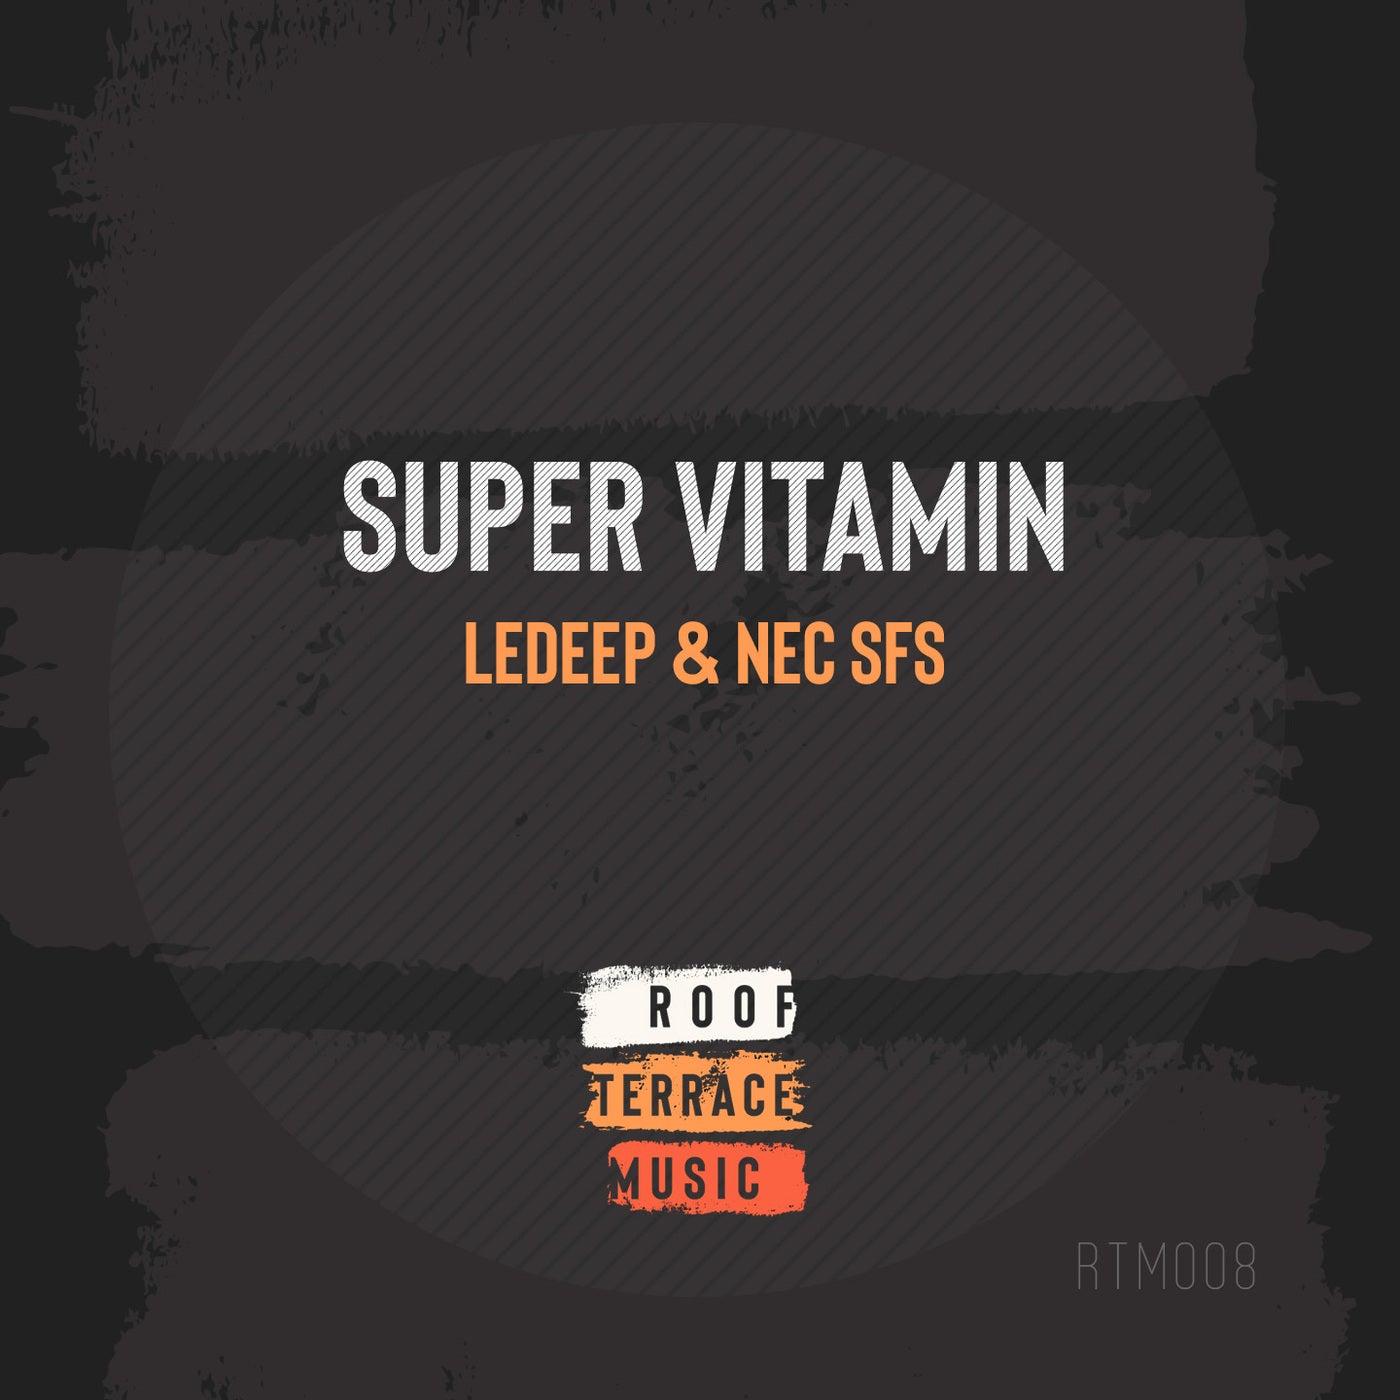 Super Vitamin